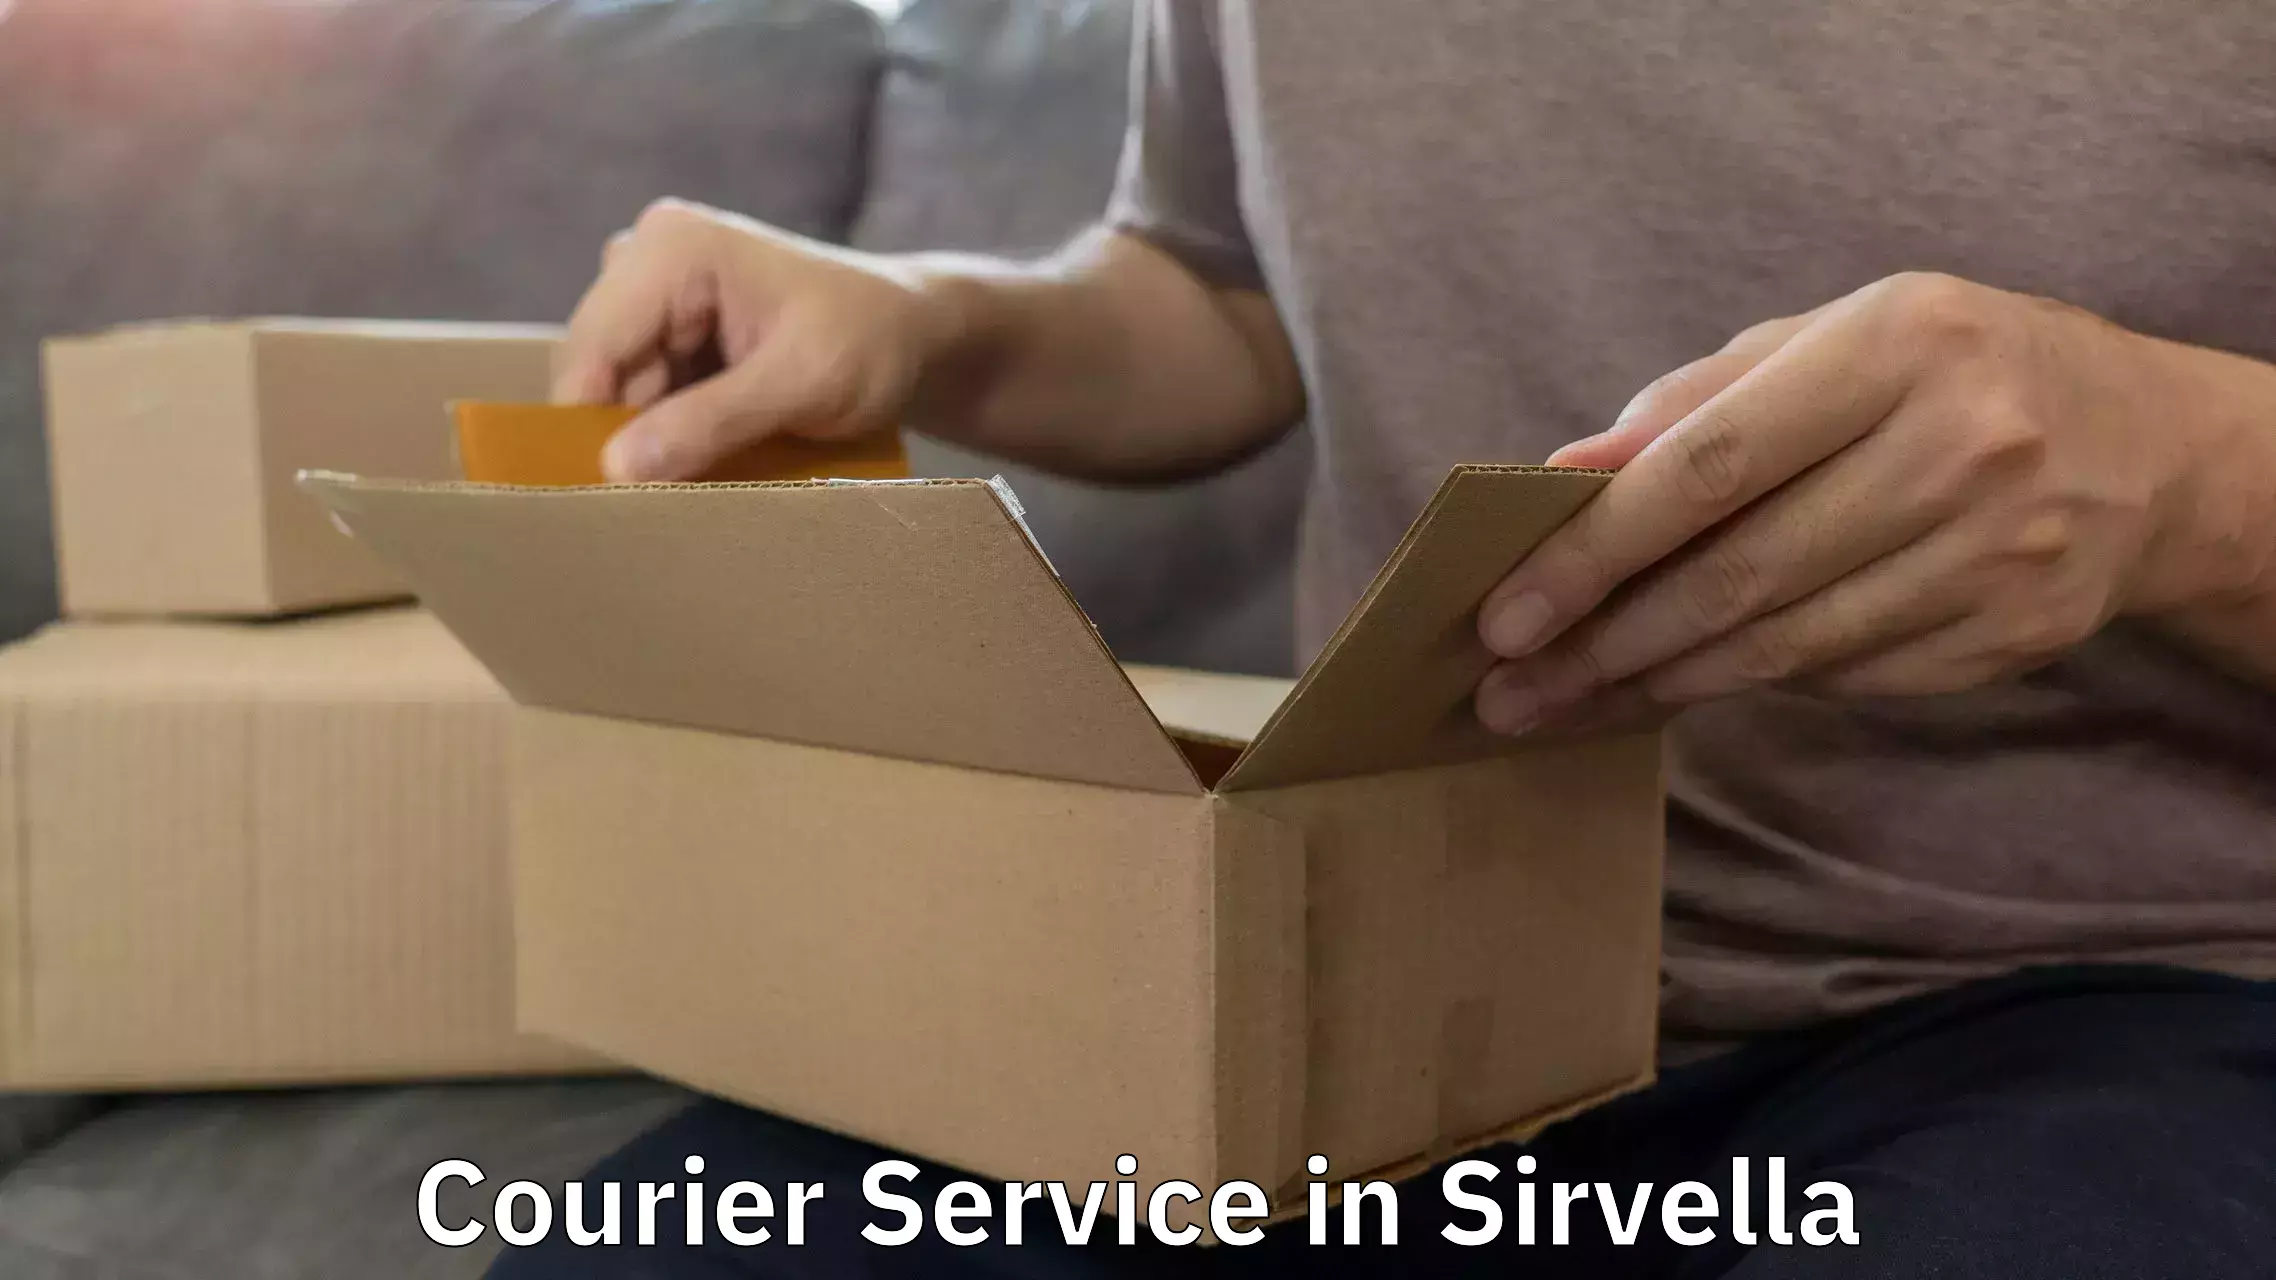 Urgent courier needs in Sirvella